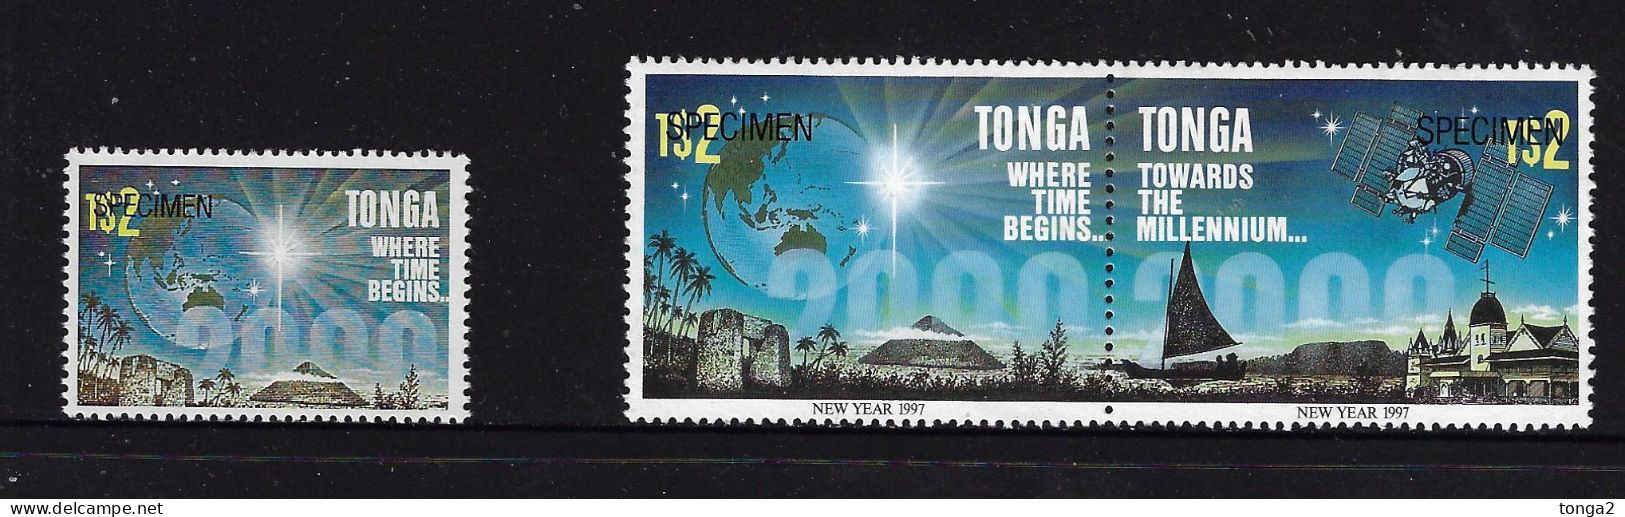 Tonga 1996 ESSAY $2.00 Space - Time - Important Read Description For More Details - Ozeanien